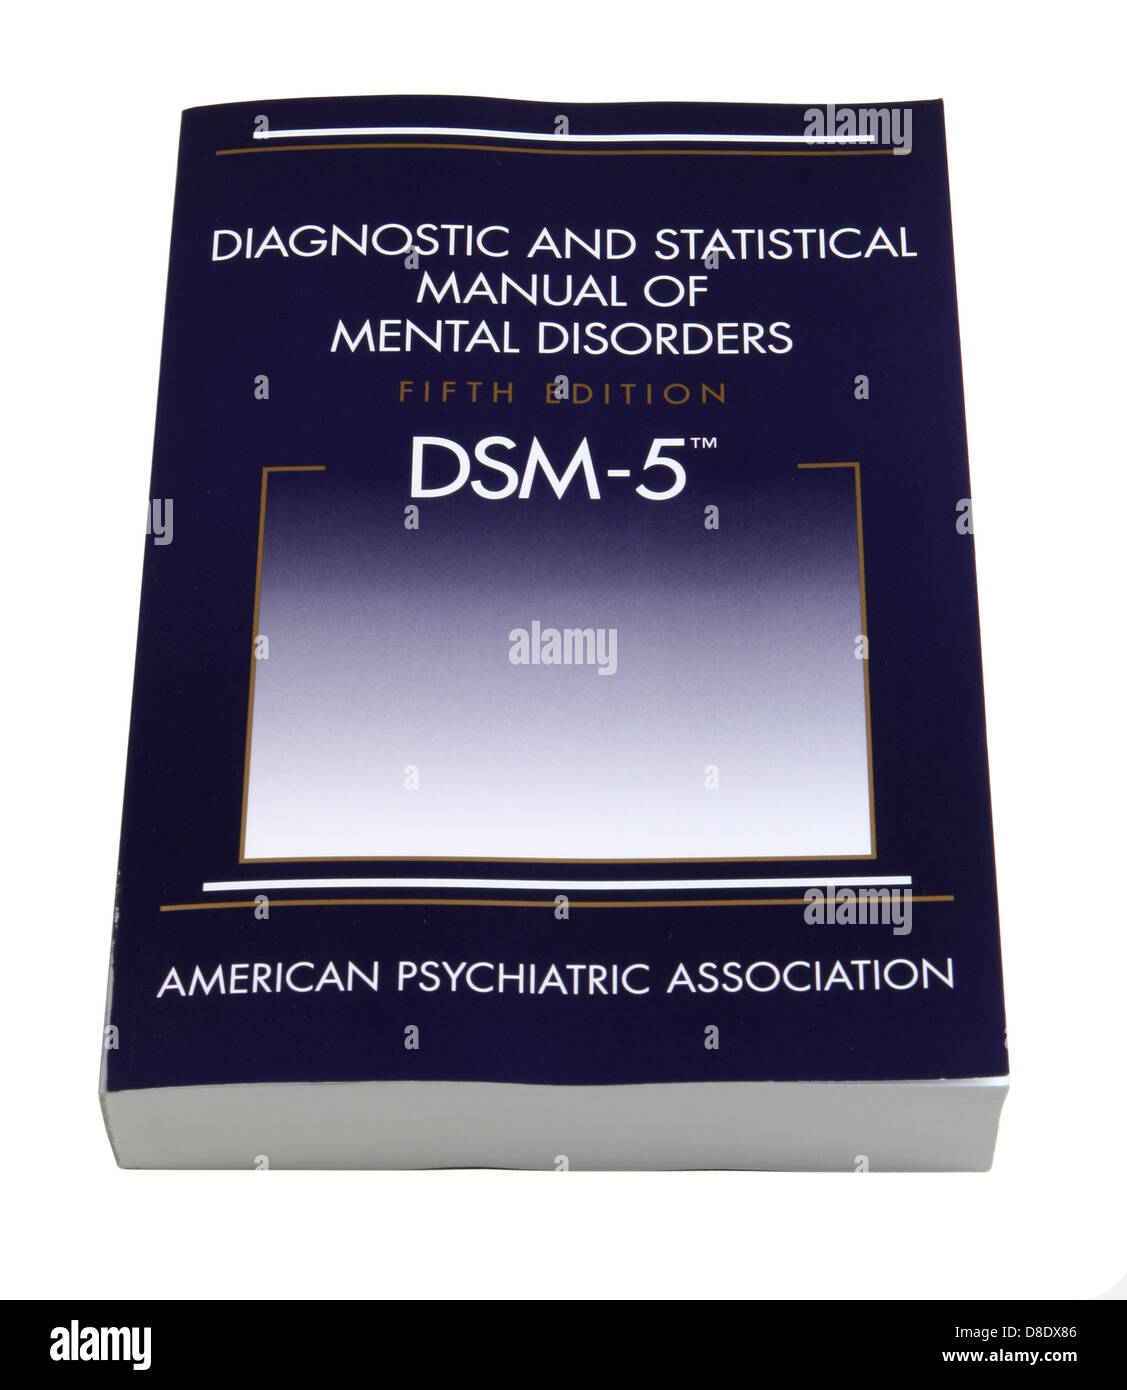 Diagnostica e Manuale statistico dei disturbi mentali, quinta edizione (DSM-5) pubblicato dalla American Psychiatric Association Foto Stock